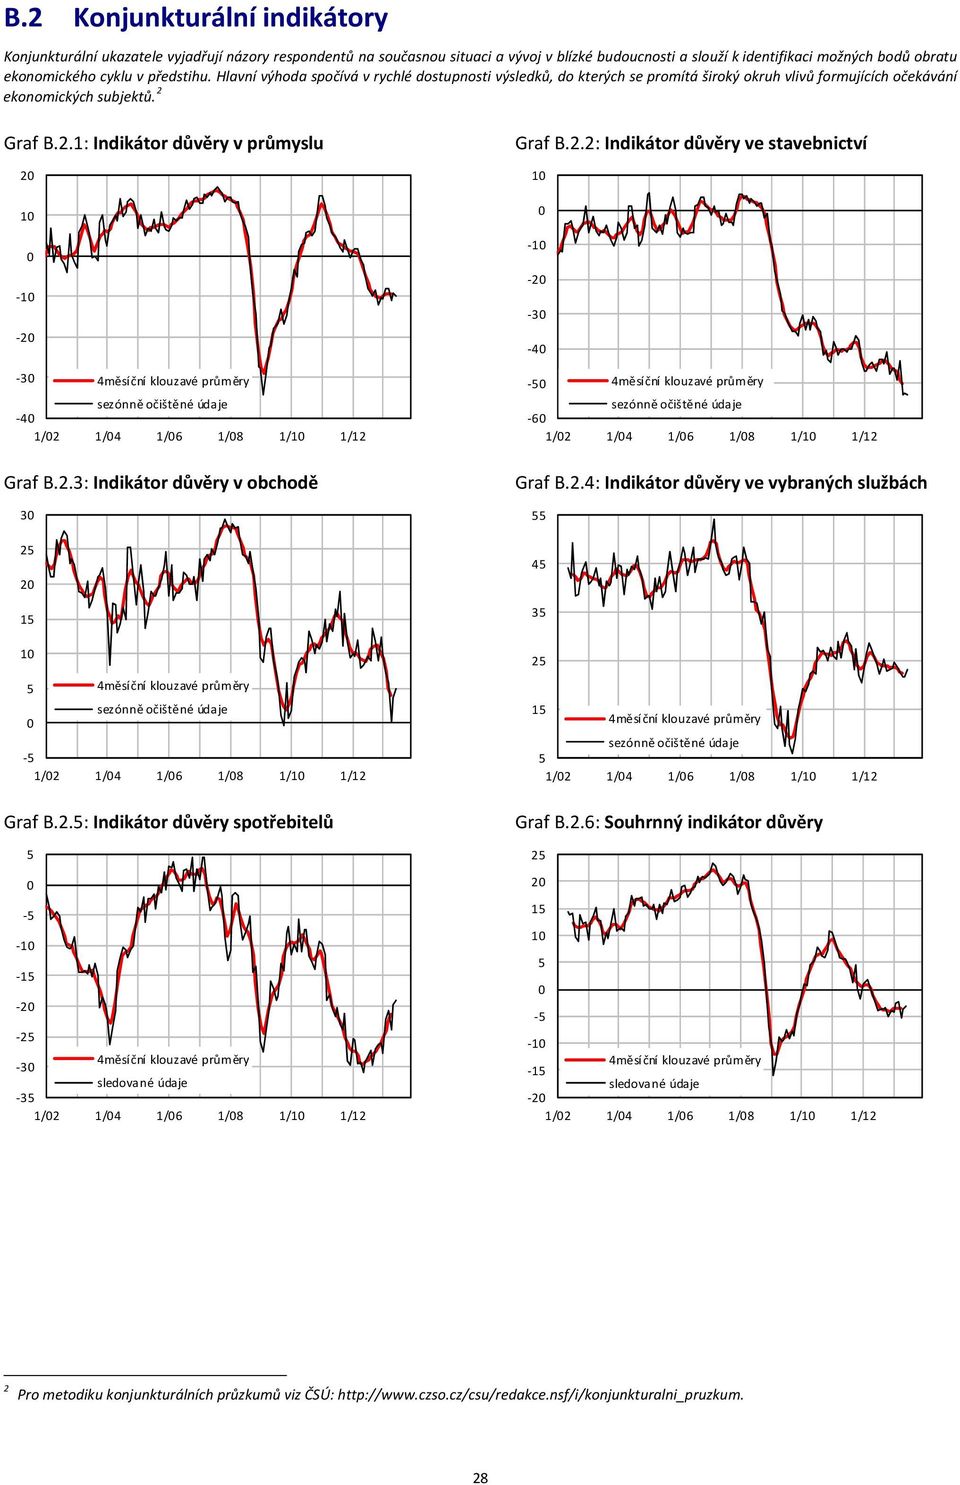 .: Indikátor důvěry v průmyslu měsíční klouzavé průměry / / / /8 / / Graf B..: Indikátor důvěry v obchodě měsíční klouzavé průměry / / / /8 / / Graf B.